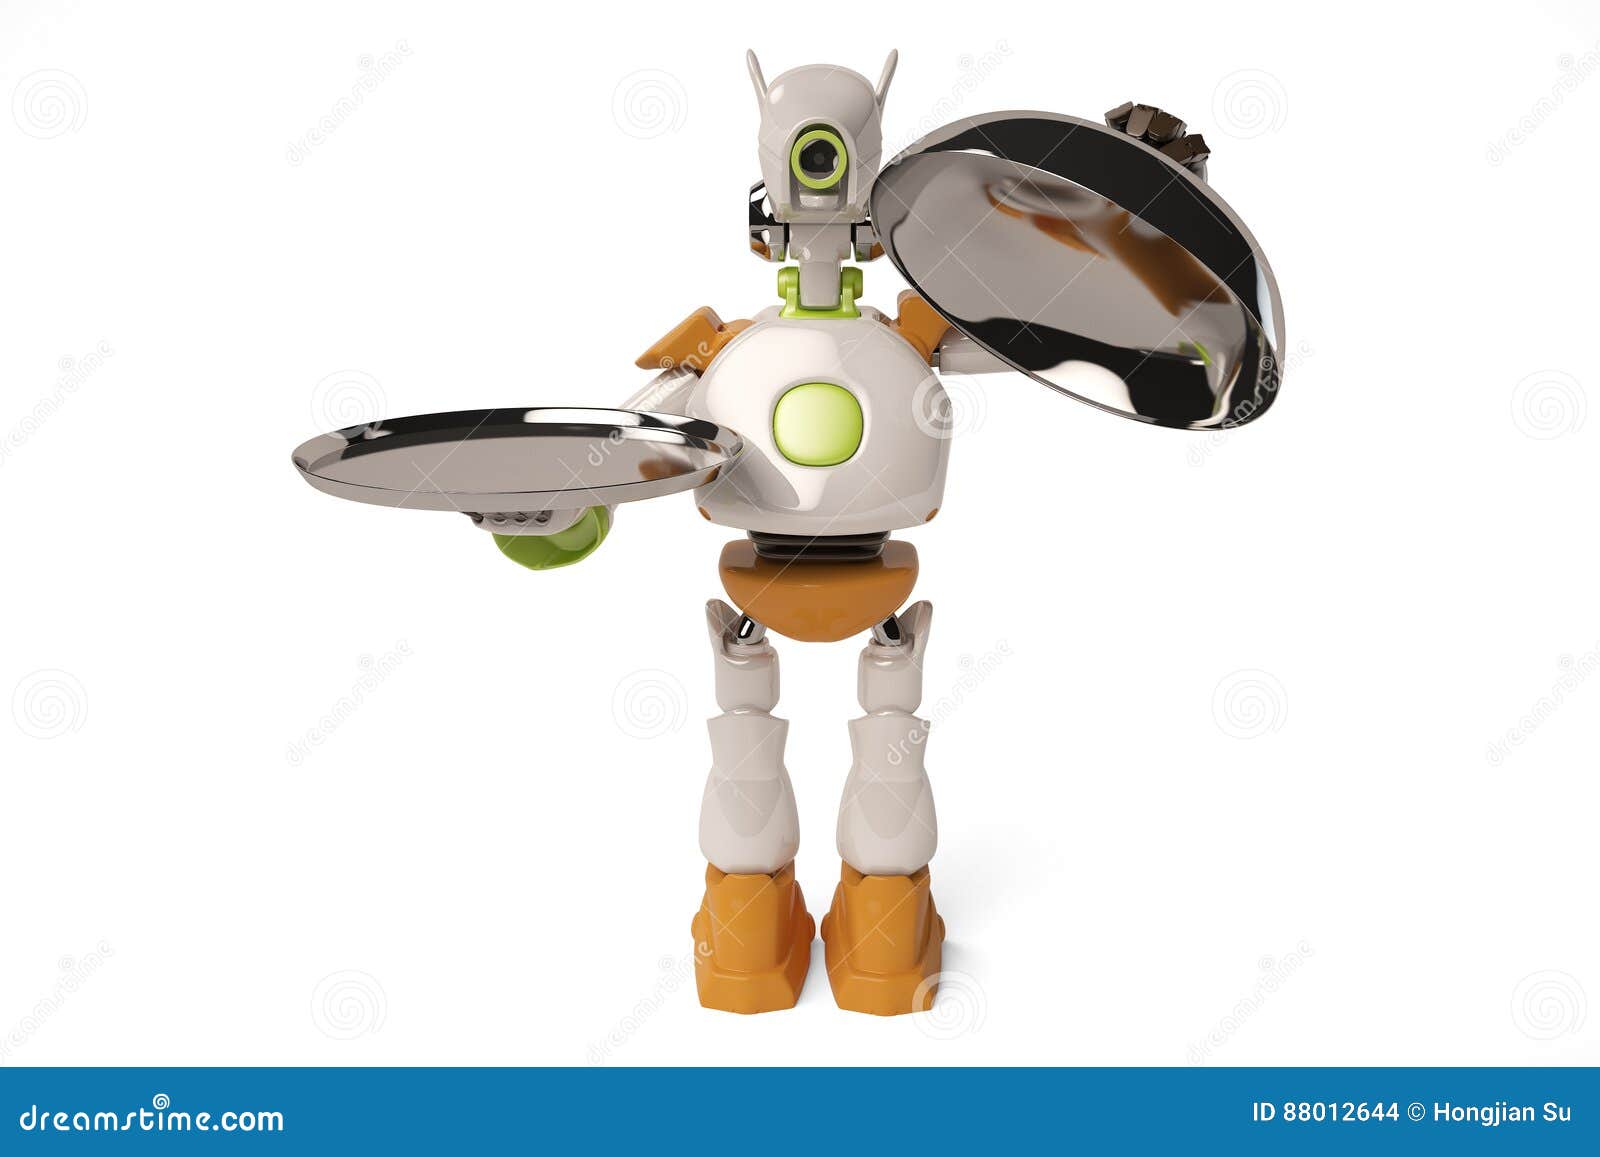 Bandeja De Acero Abierta Del Robot, Stock de ilustración - Ilustración de disco,